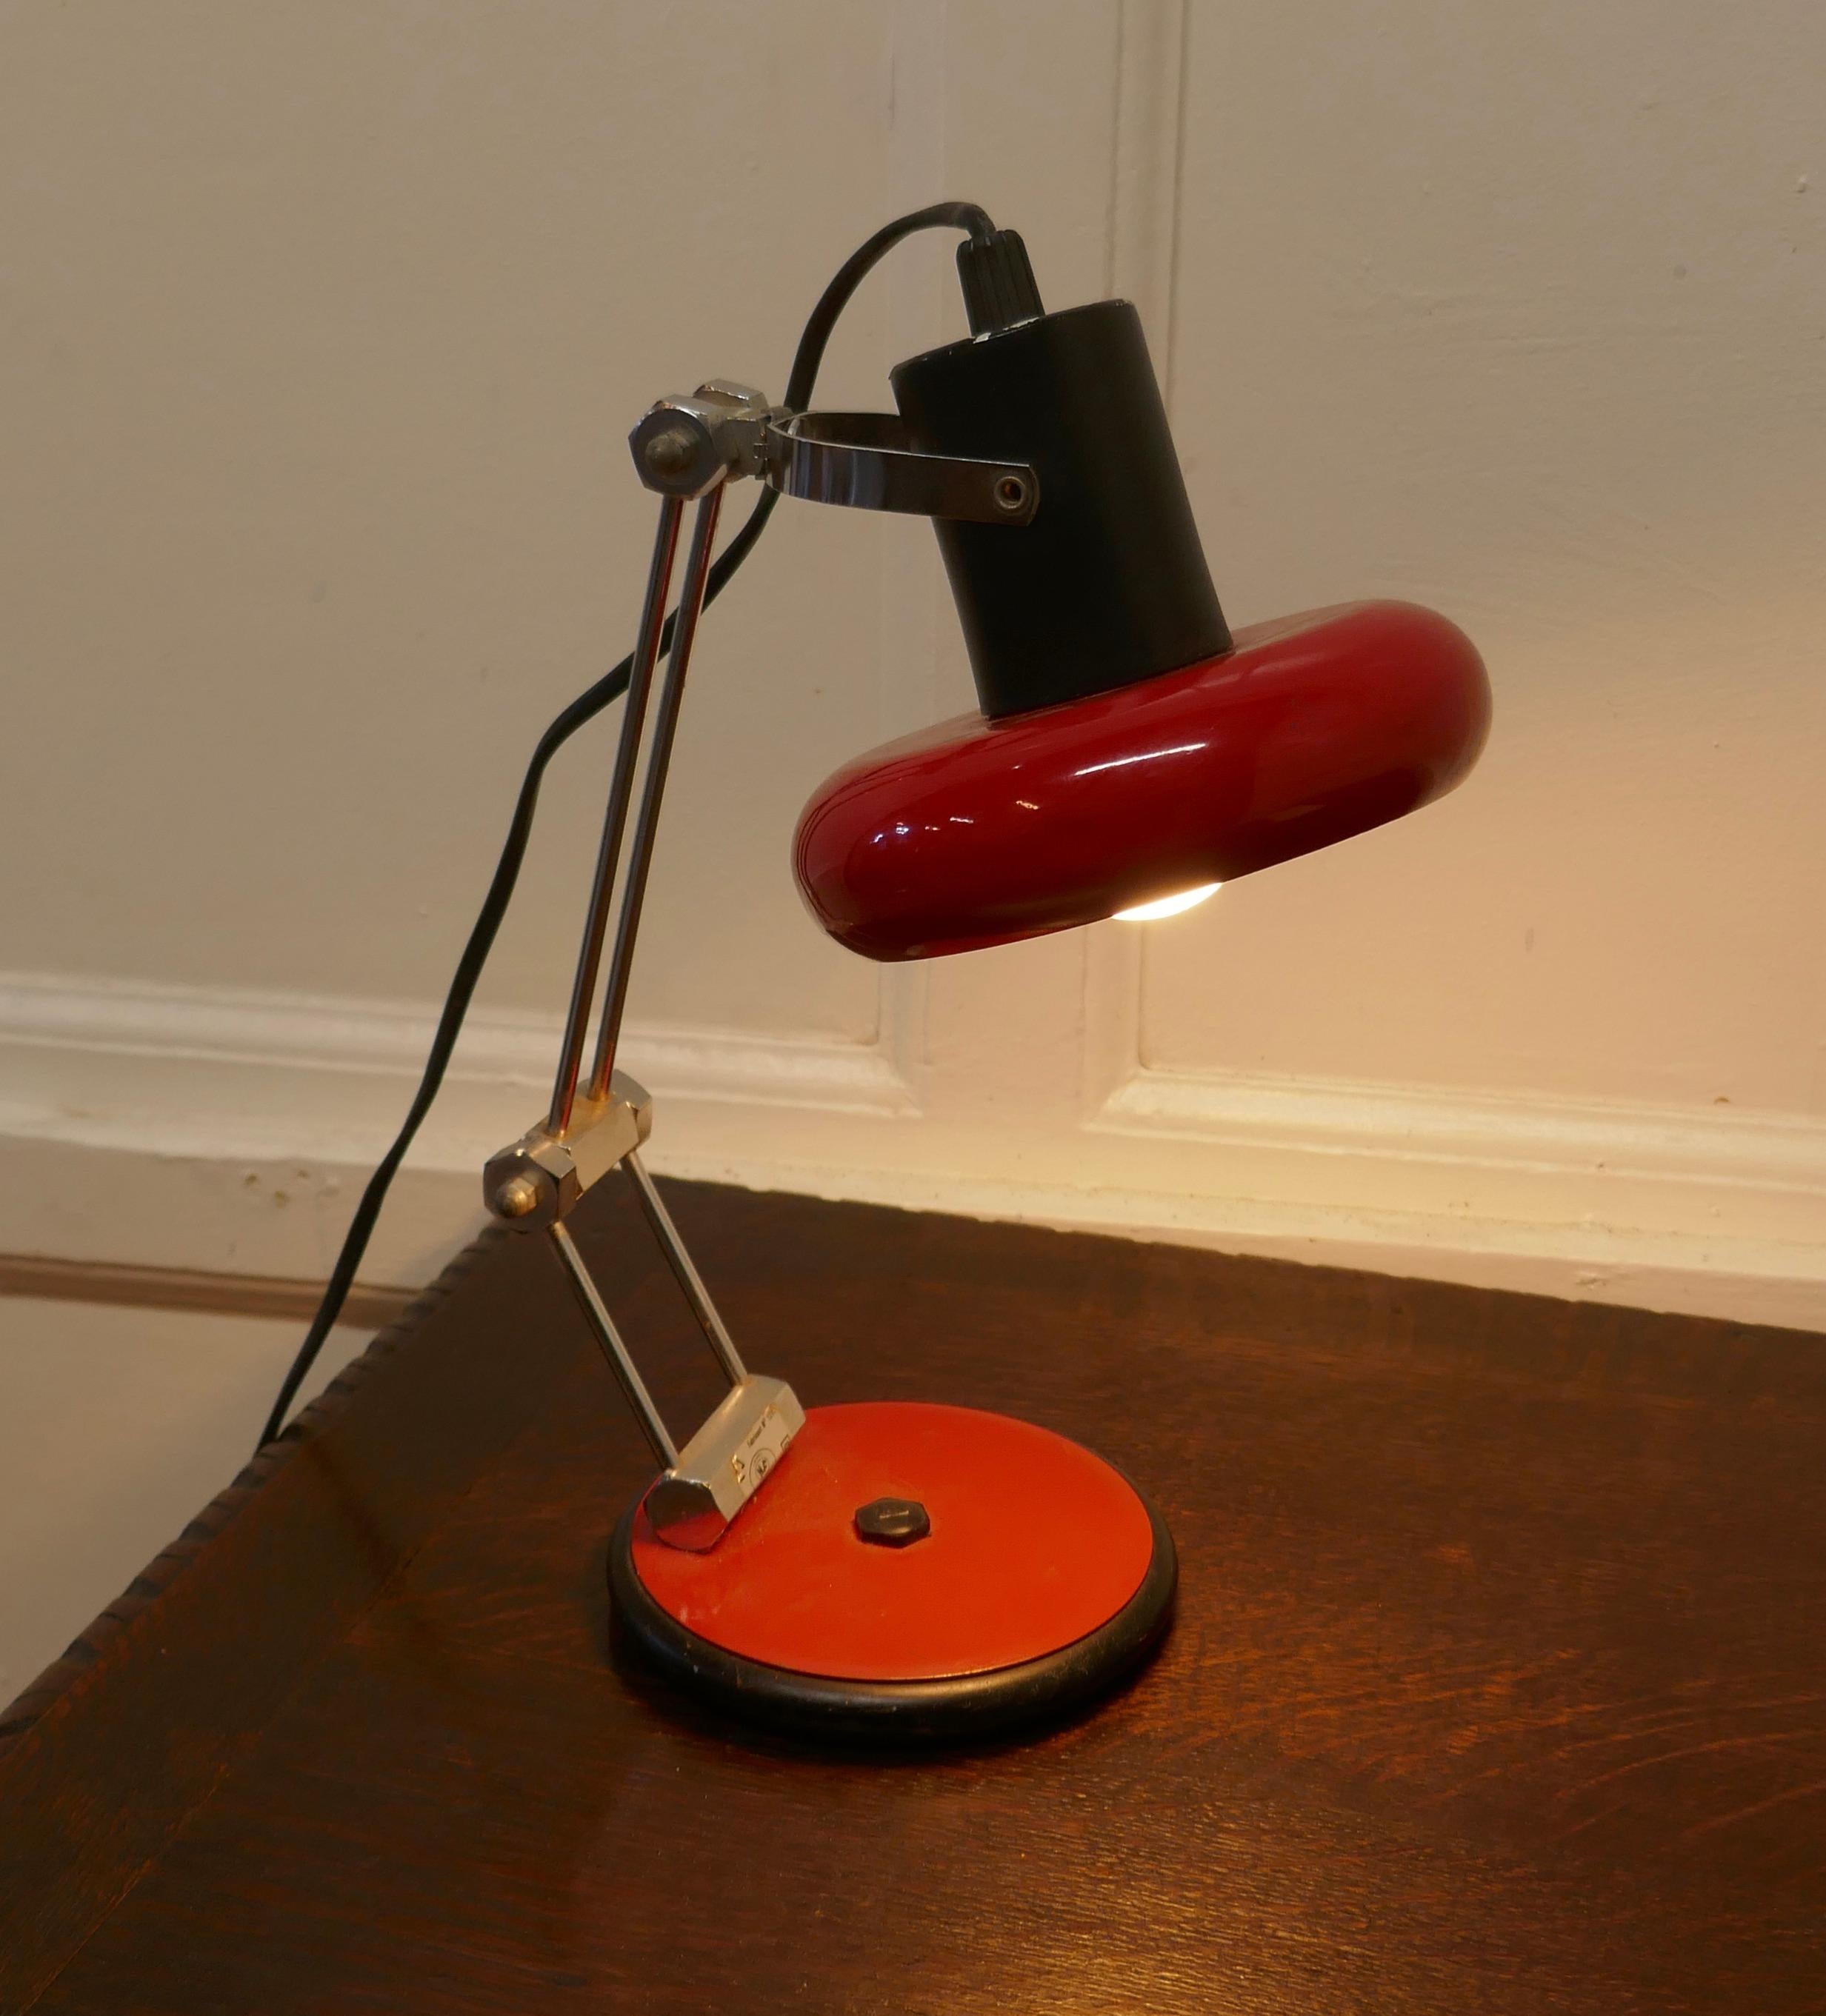 Lampe d'angle Sputnik rétro française

Pièce très élégante en rouge, avec un abat-jour rond qui peut être légèrement incliné pour s'adapter. 
Mesures : La lampe mesure 13